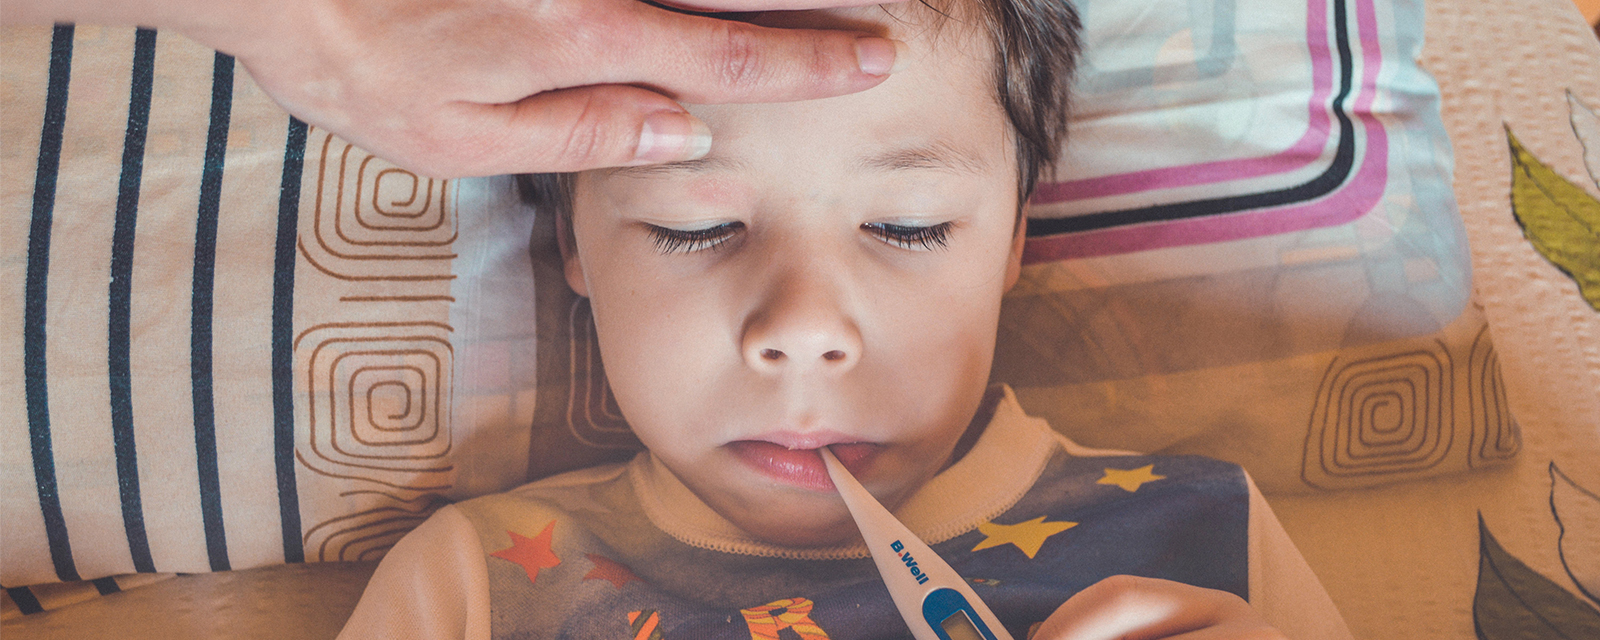 Krankes Kind mit Fieberthermometer im Mund